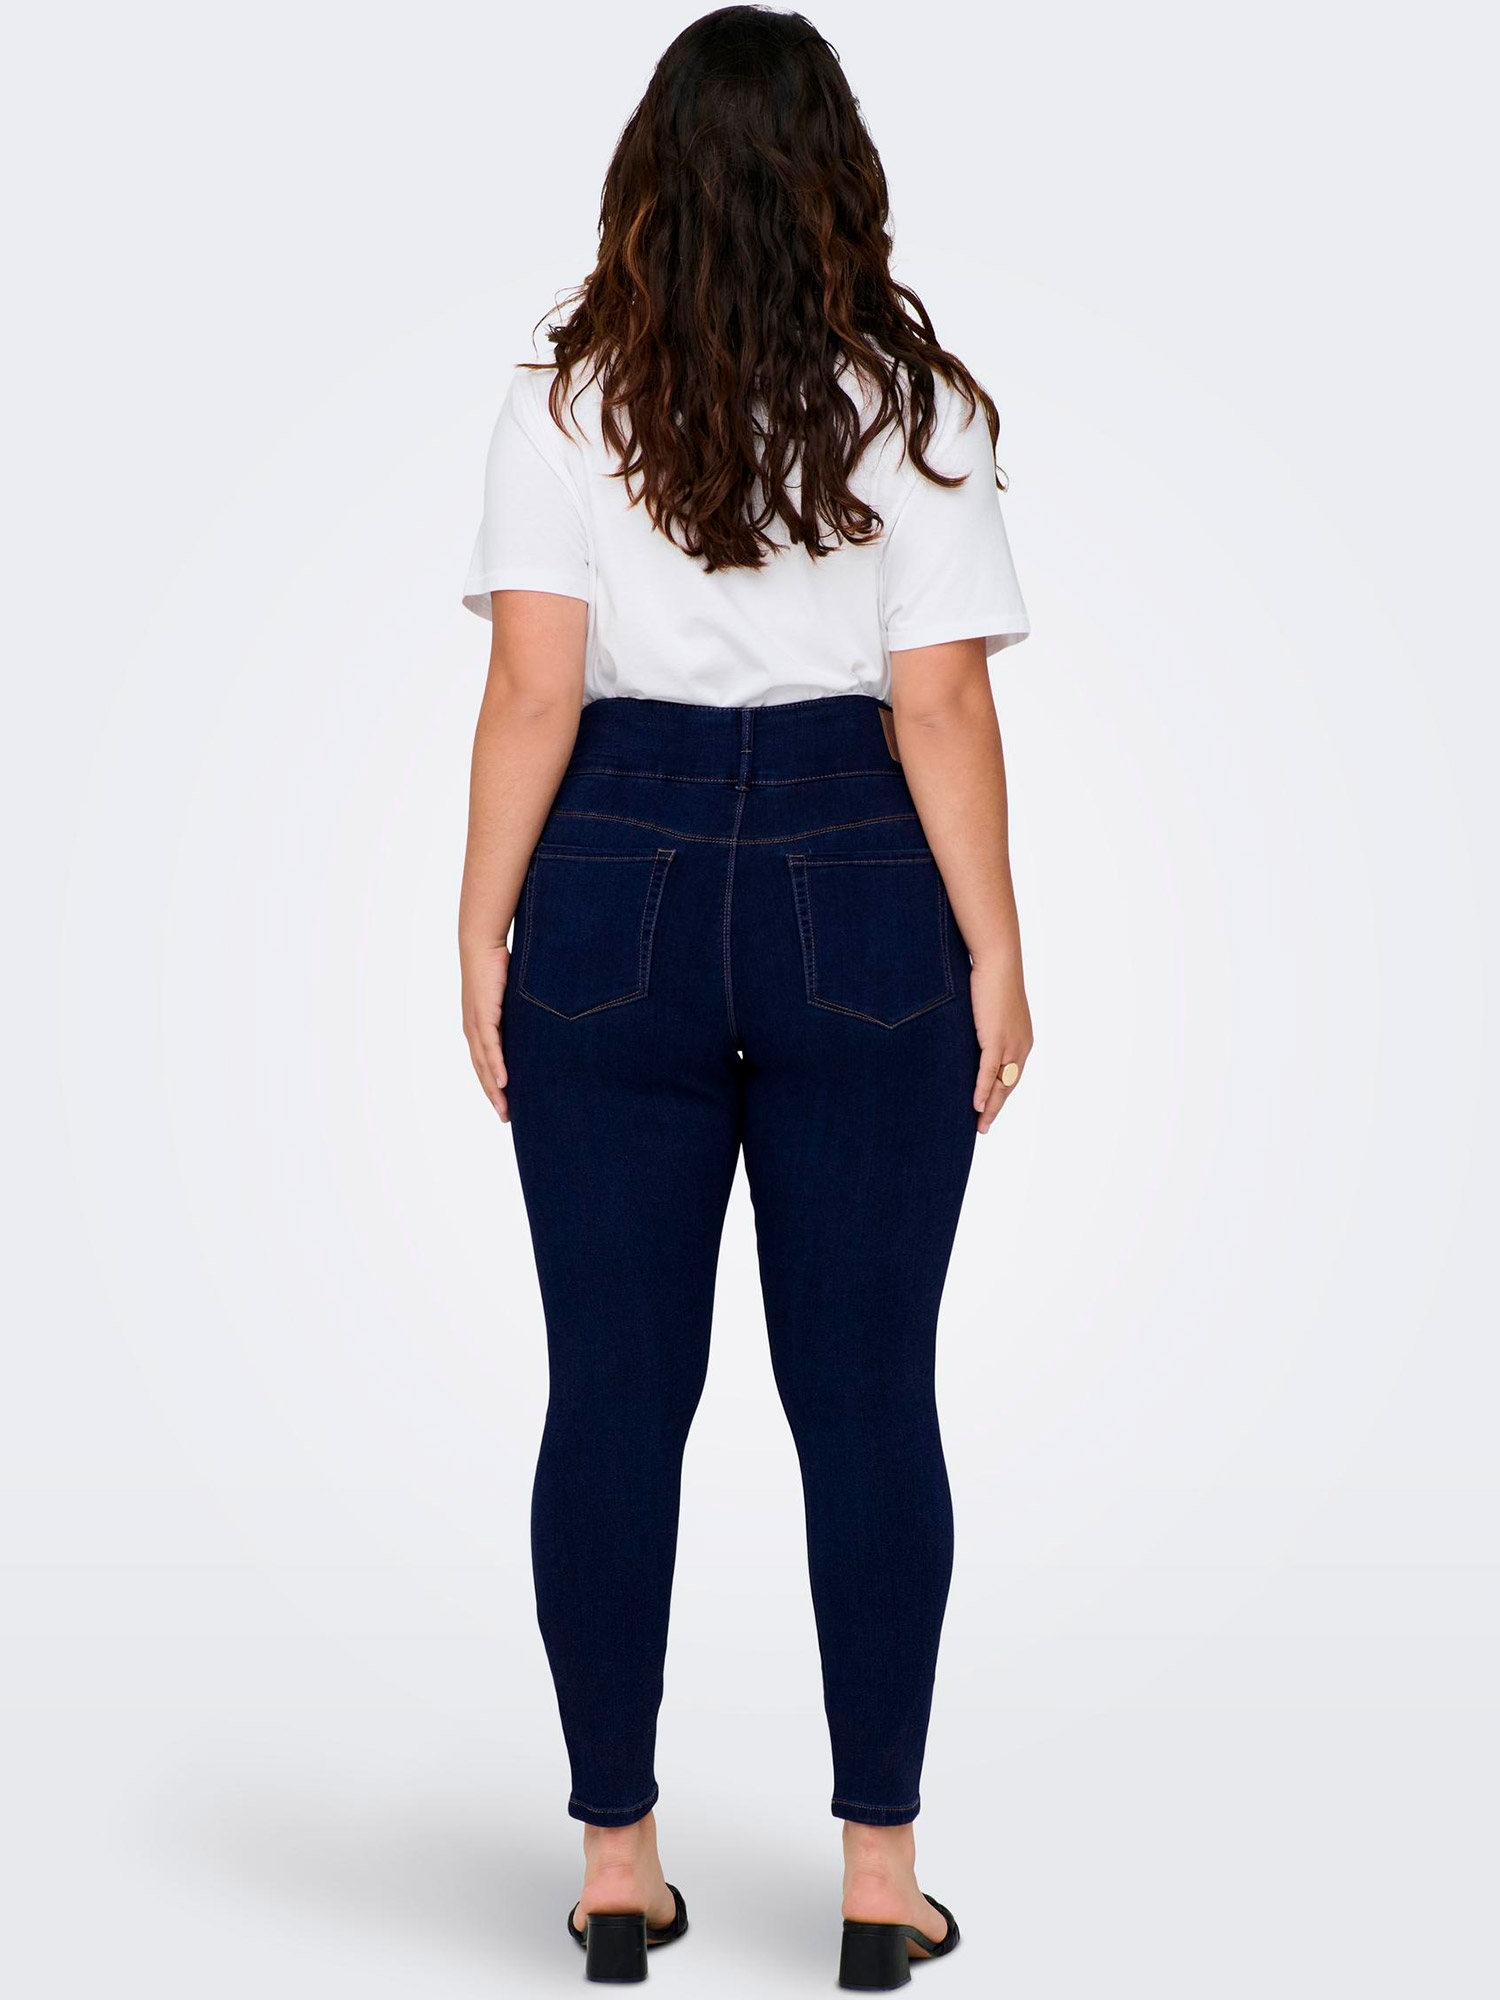 Car ANNA - Mørkeblå supre stretch jeans med 3 knapper og smalle ben fra Only Carmakoma